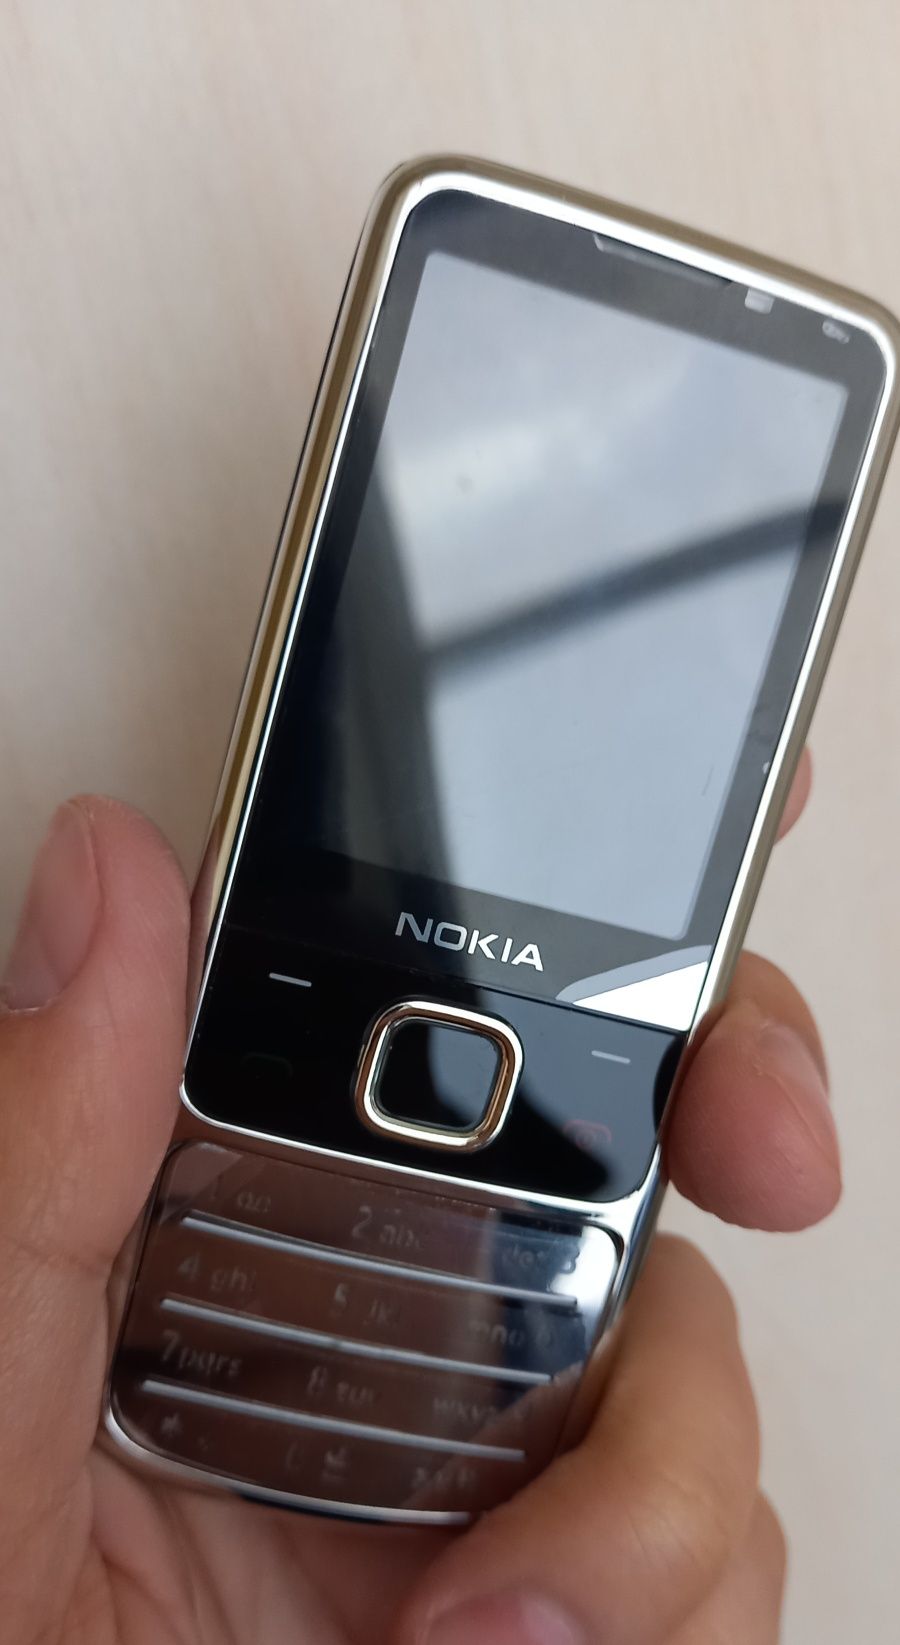 Nokia 6700 Silver